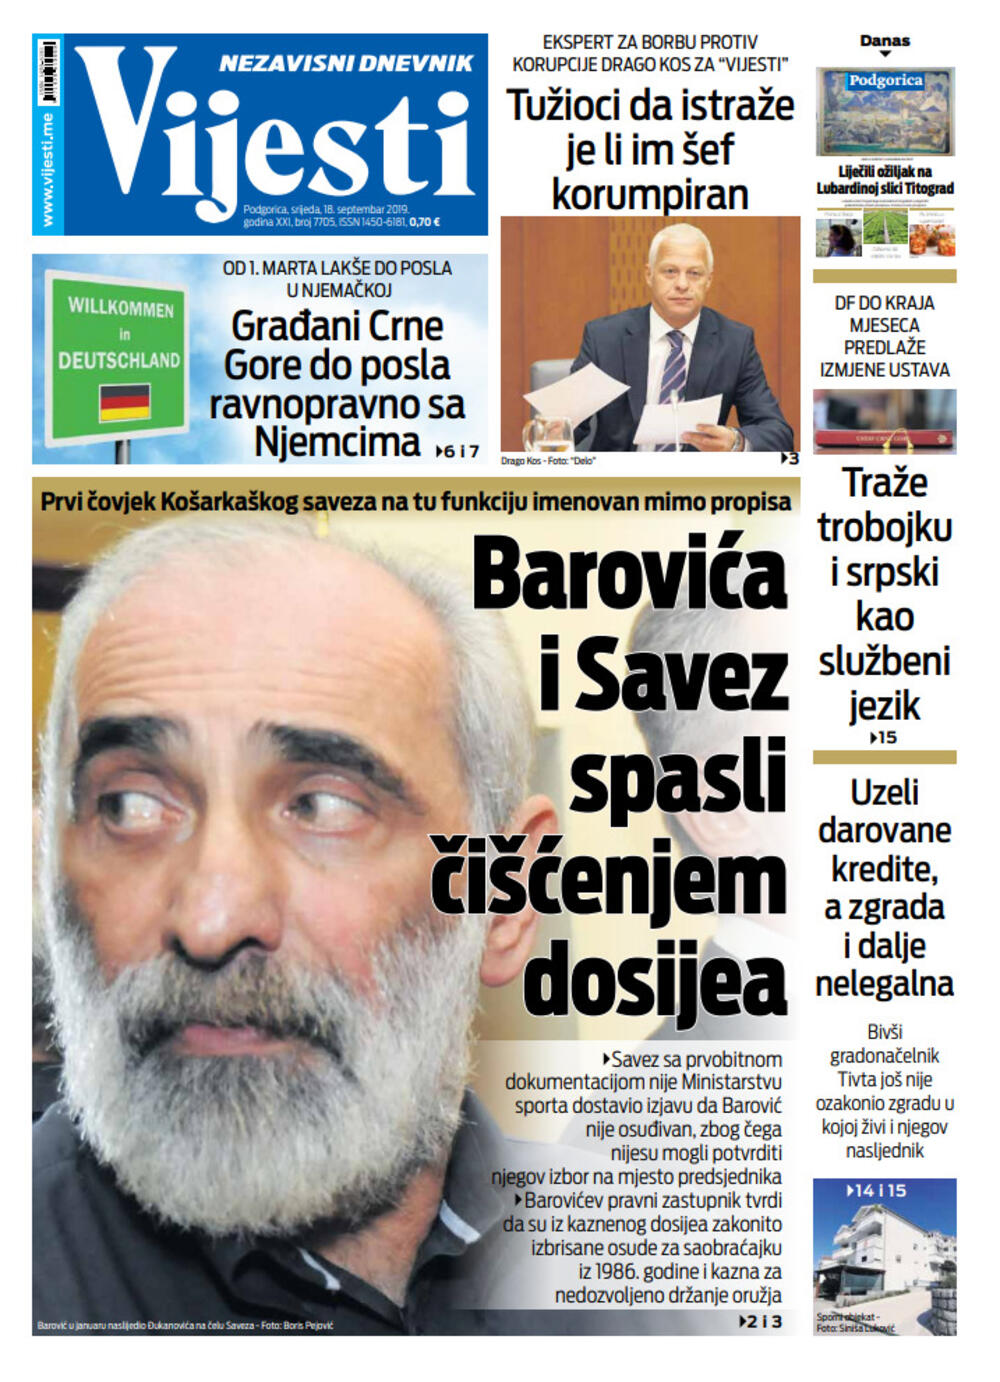 Naslovna strana "Vijesti" za 18. septembar, Foto: Vijesti